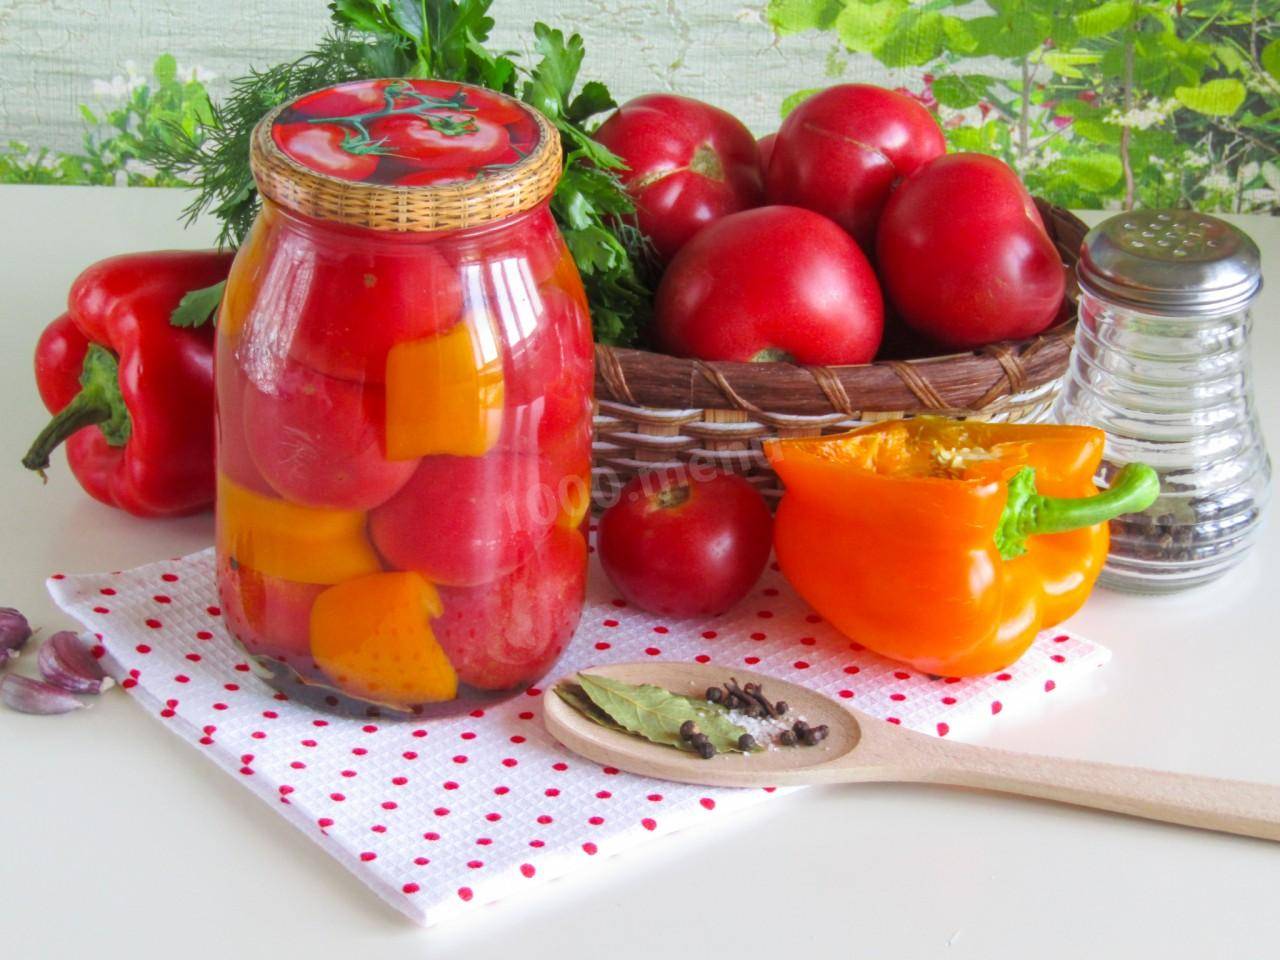 Как сохранить помидоры свежими на зиму 5 способов с фото фоторецепт.ru